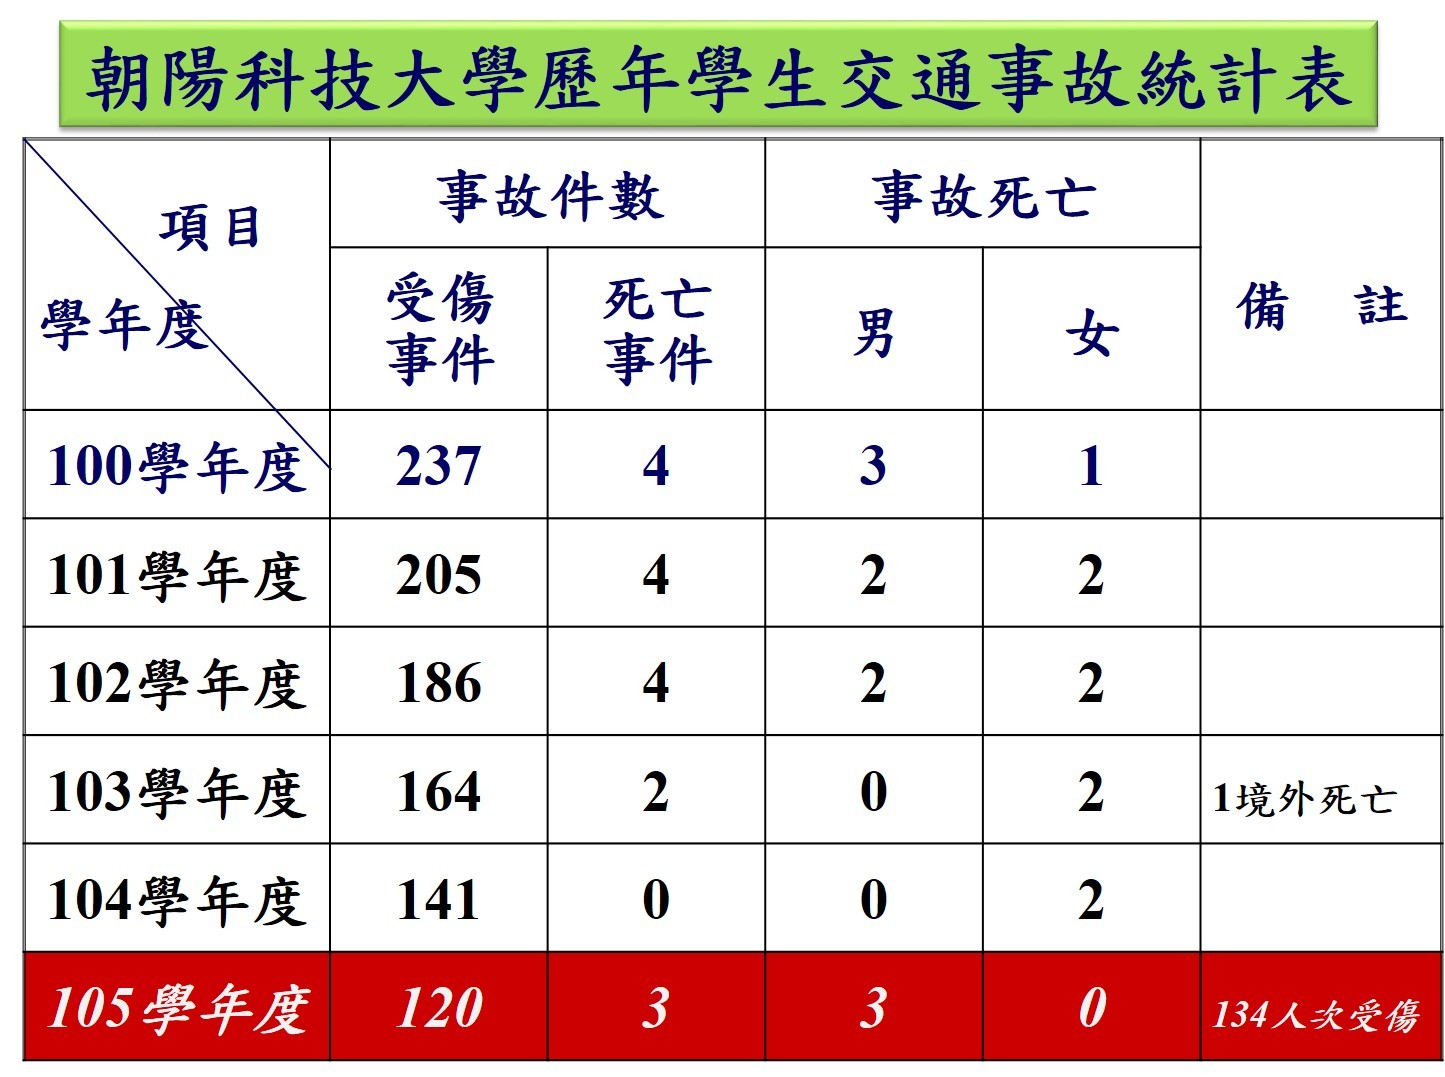 朝陽科技大學100-105年學生交通事故統計表